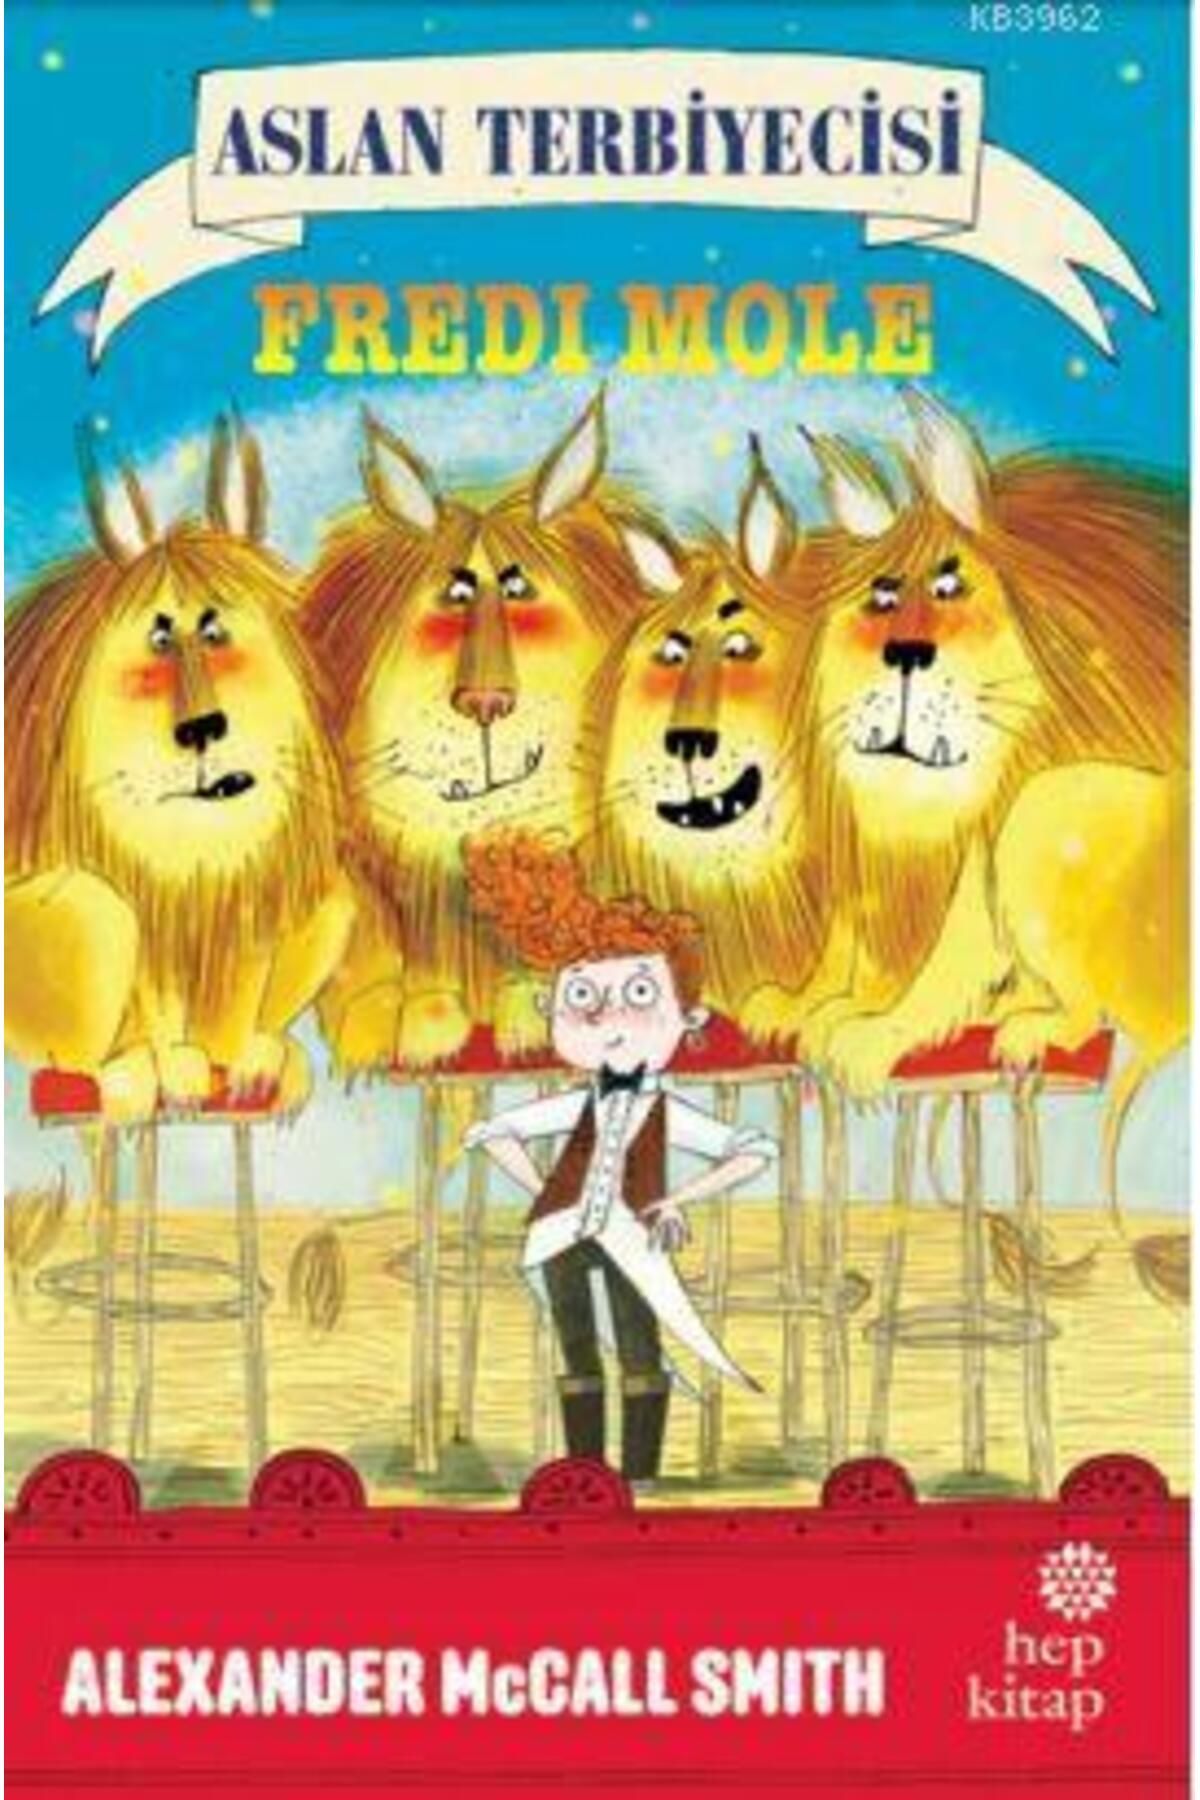 Hep Kitap Aslan Terbiyecisi Fredi Mole